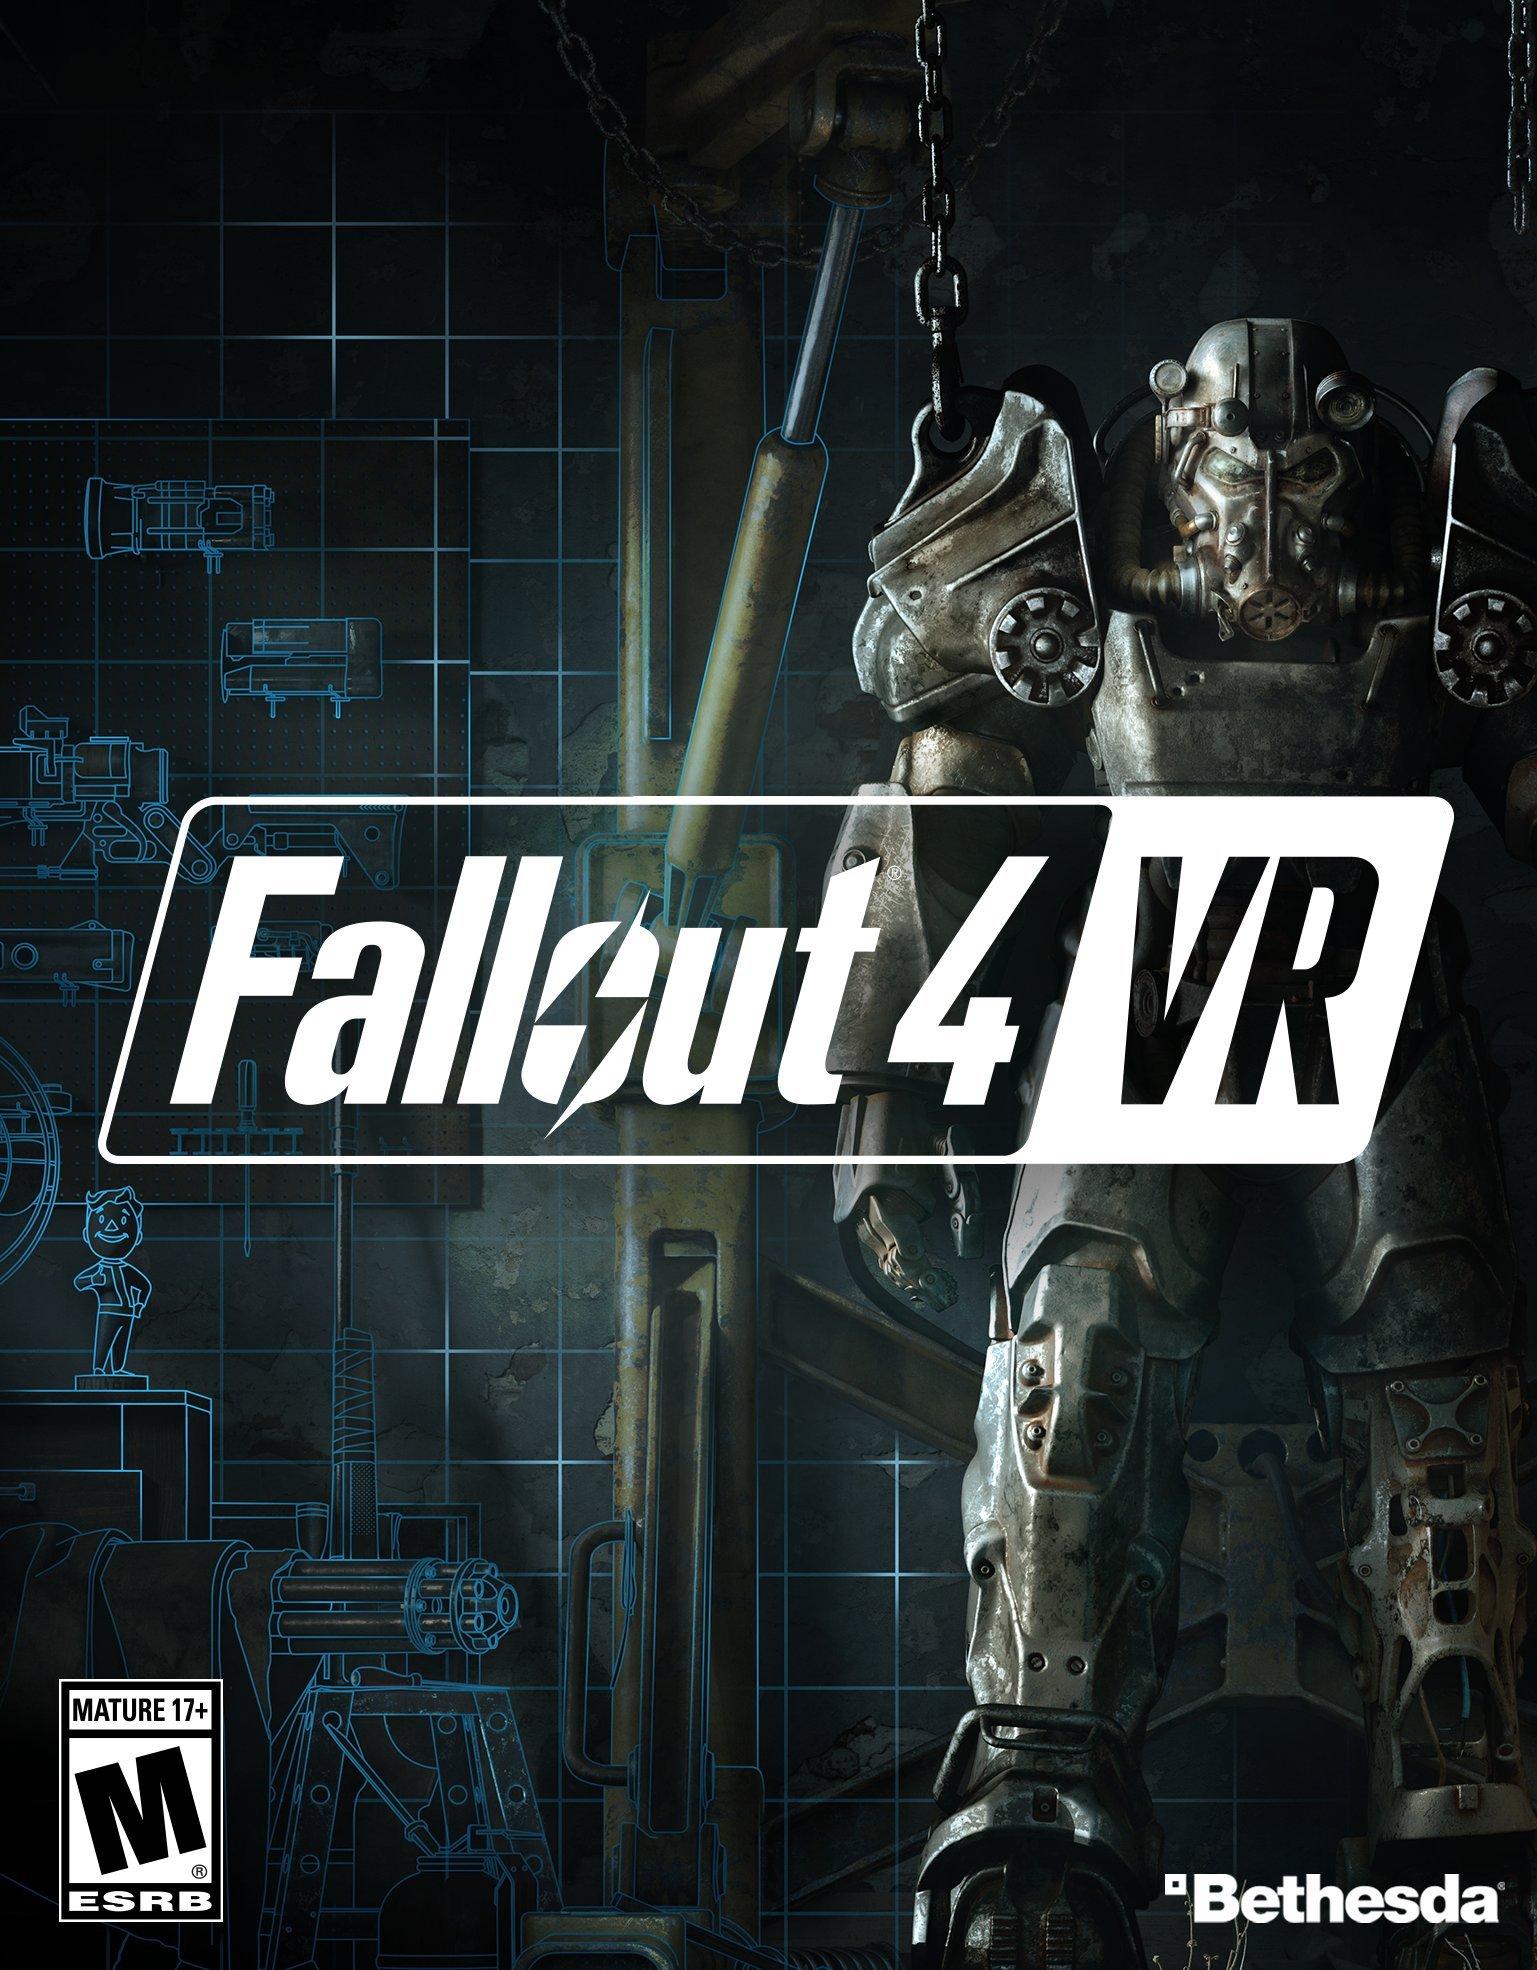 https://media.gamestop.com/i/gamestop/10150349/Fallout-4-VR